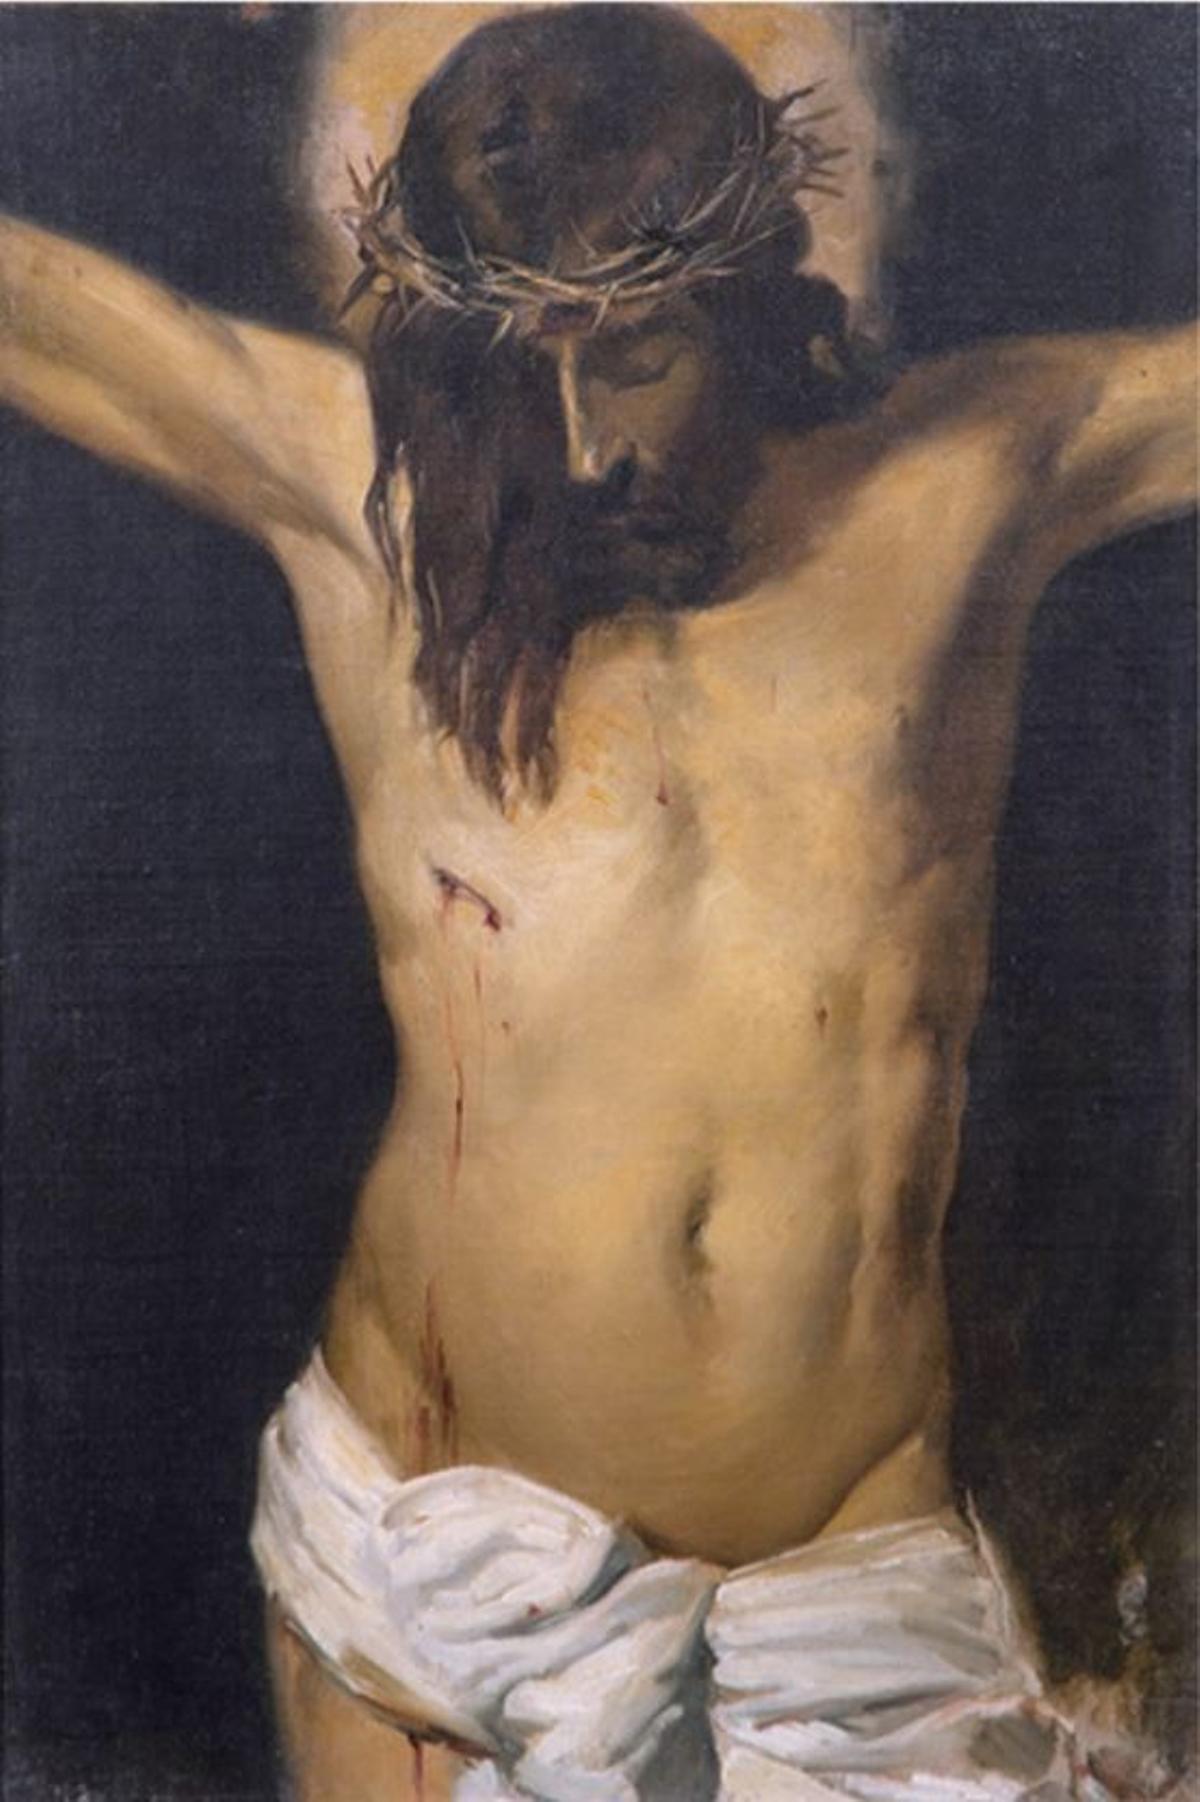 Copia del &quot;Cristo crucificado&quot; de Velázquez realizada por Sorolla que sale el 19 de marzo a subasta.